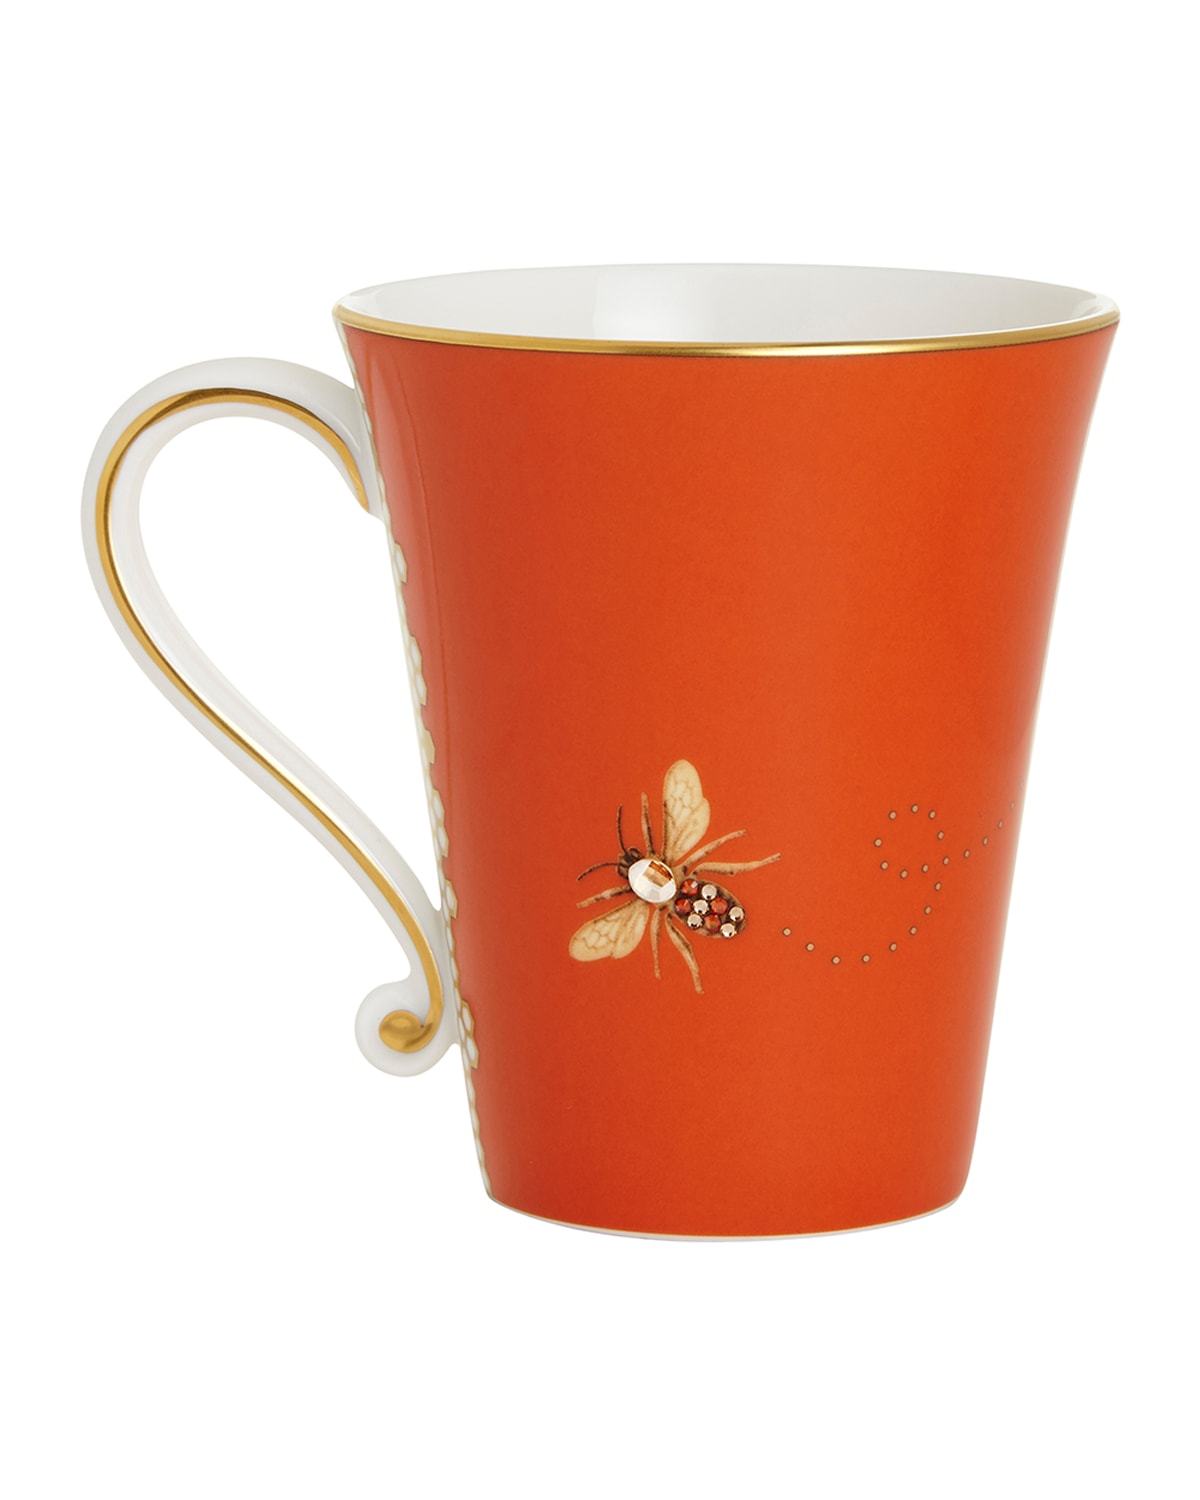 Prouna My Honeybee Mug In Gold Orange